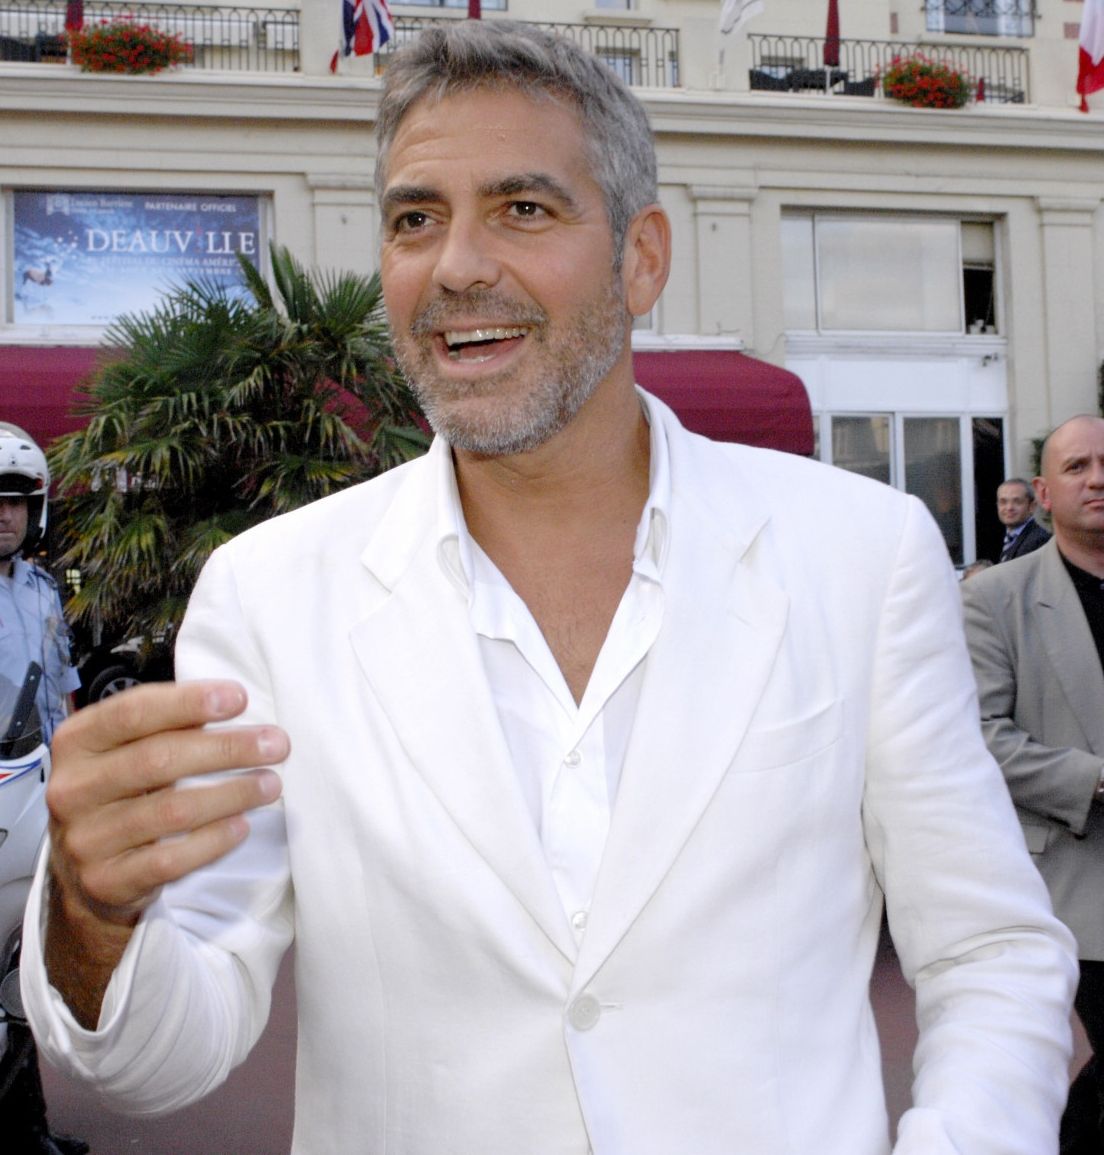 http://2.bp.blogspot.com/-wpNIyIBidM8/TwPofo60t4I/AAAAAAAAEJc/Fi7BqUuBZWY/s1600/George-Clooney-03.jpg